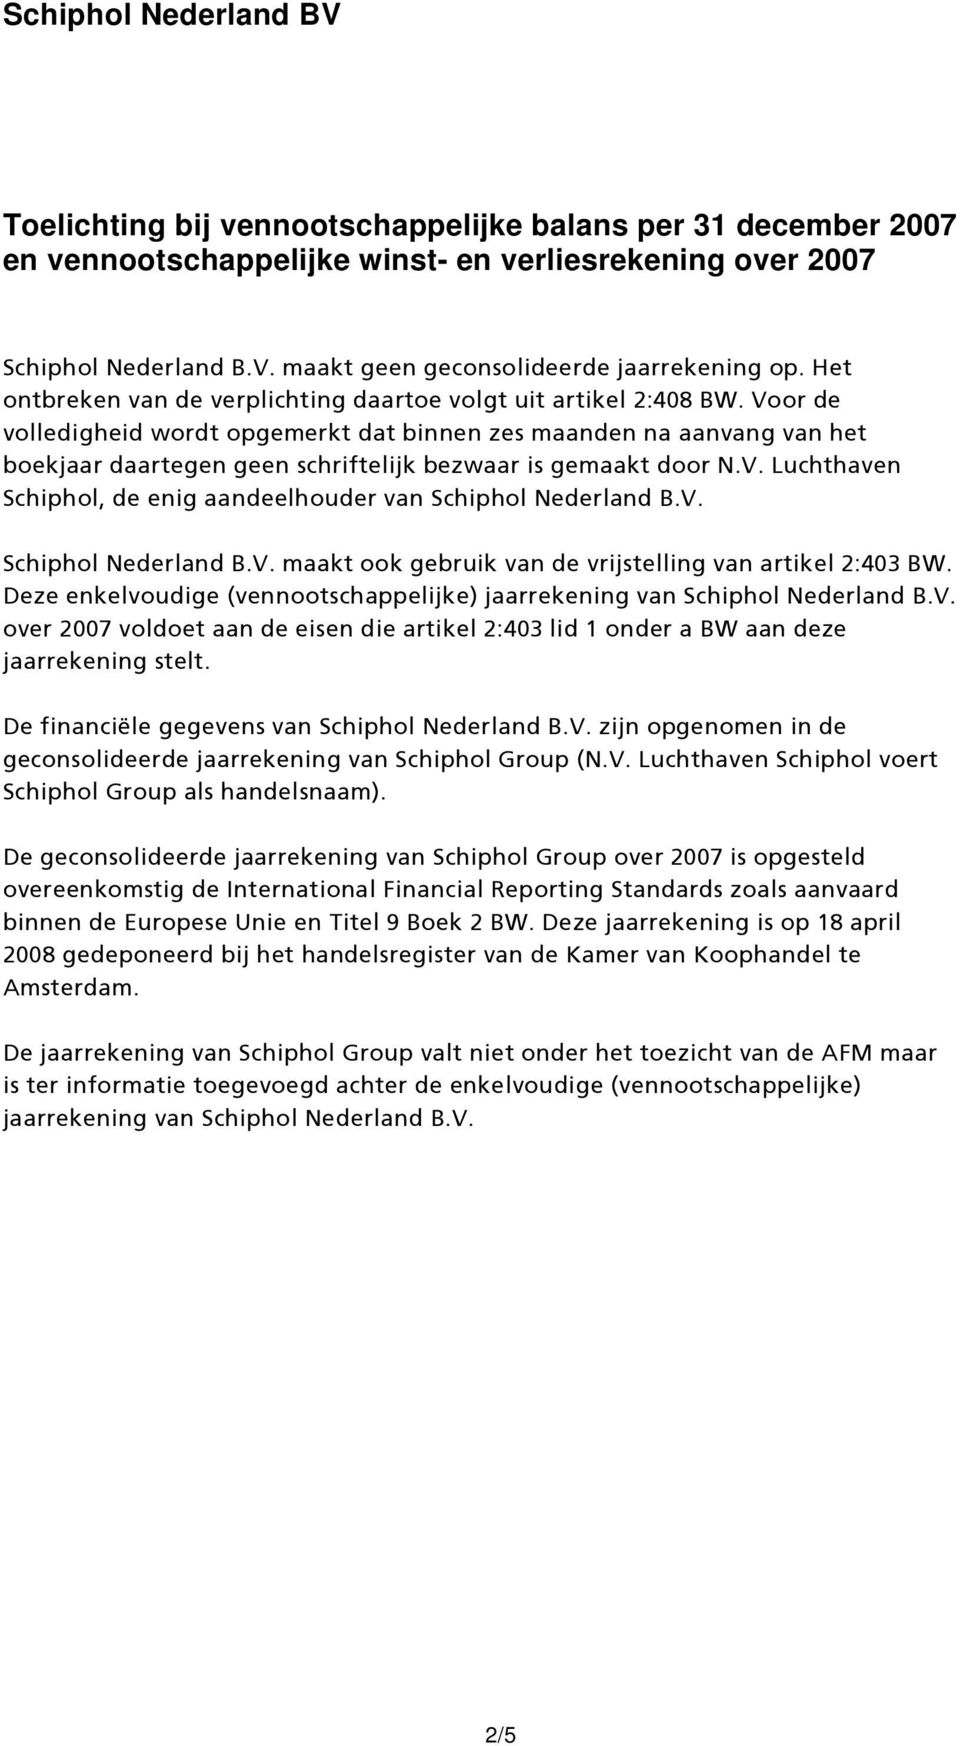 Voor de volledigheid wordt opgemerkt dat binnen zes maanden na aanvang van het boekjaar daartegen geen schriftelijk bezwaar is gemaakt door N.V. Luchthaven Schiphol, de enig aandeelhouder van Schiphol Nederland B.